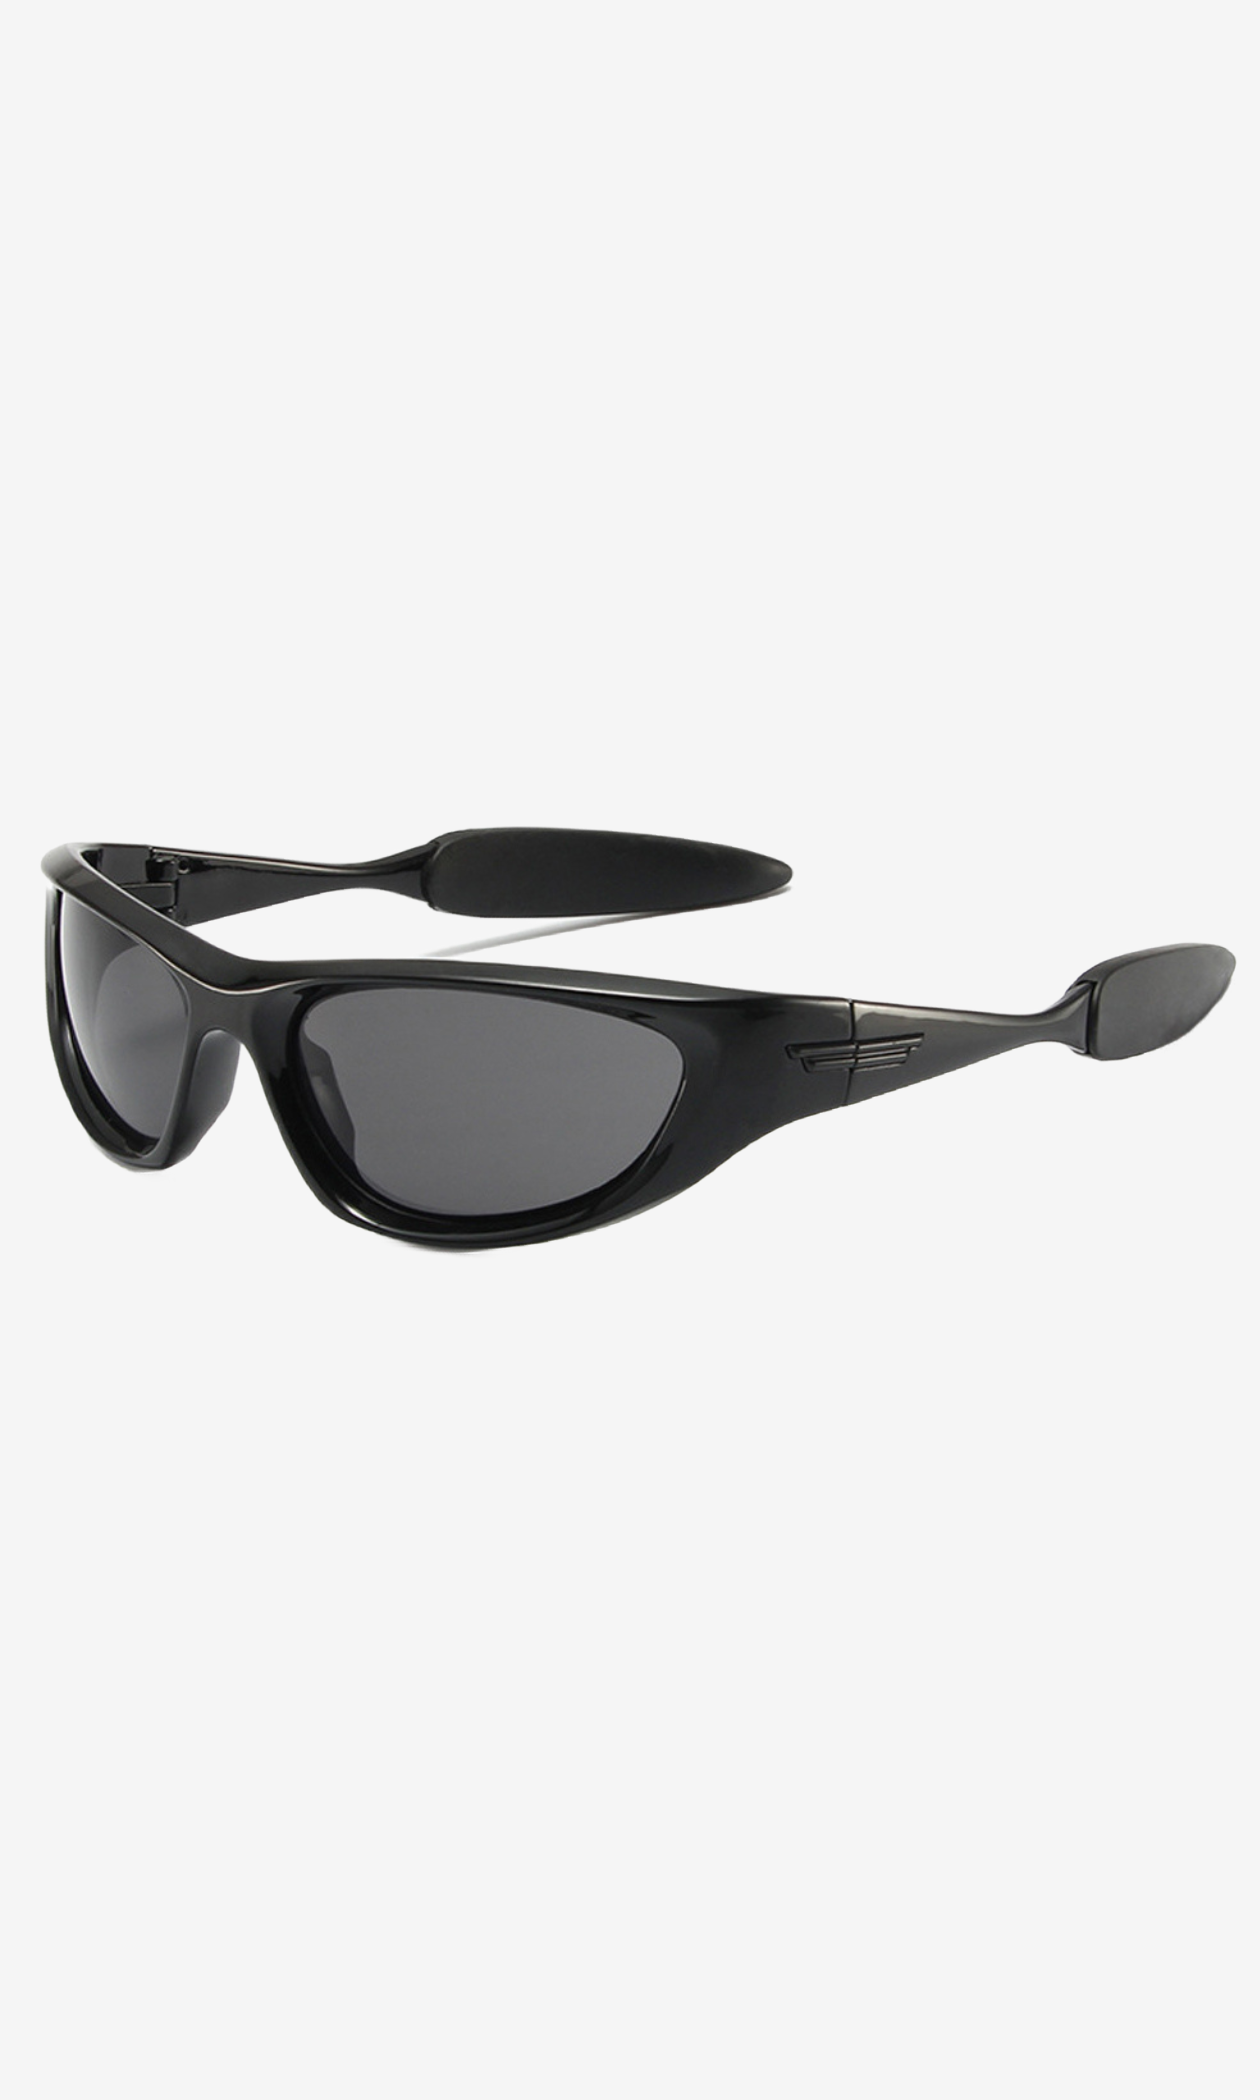 mono-sunglasses-black